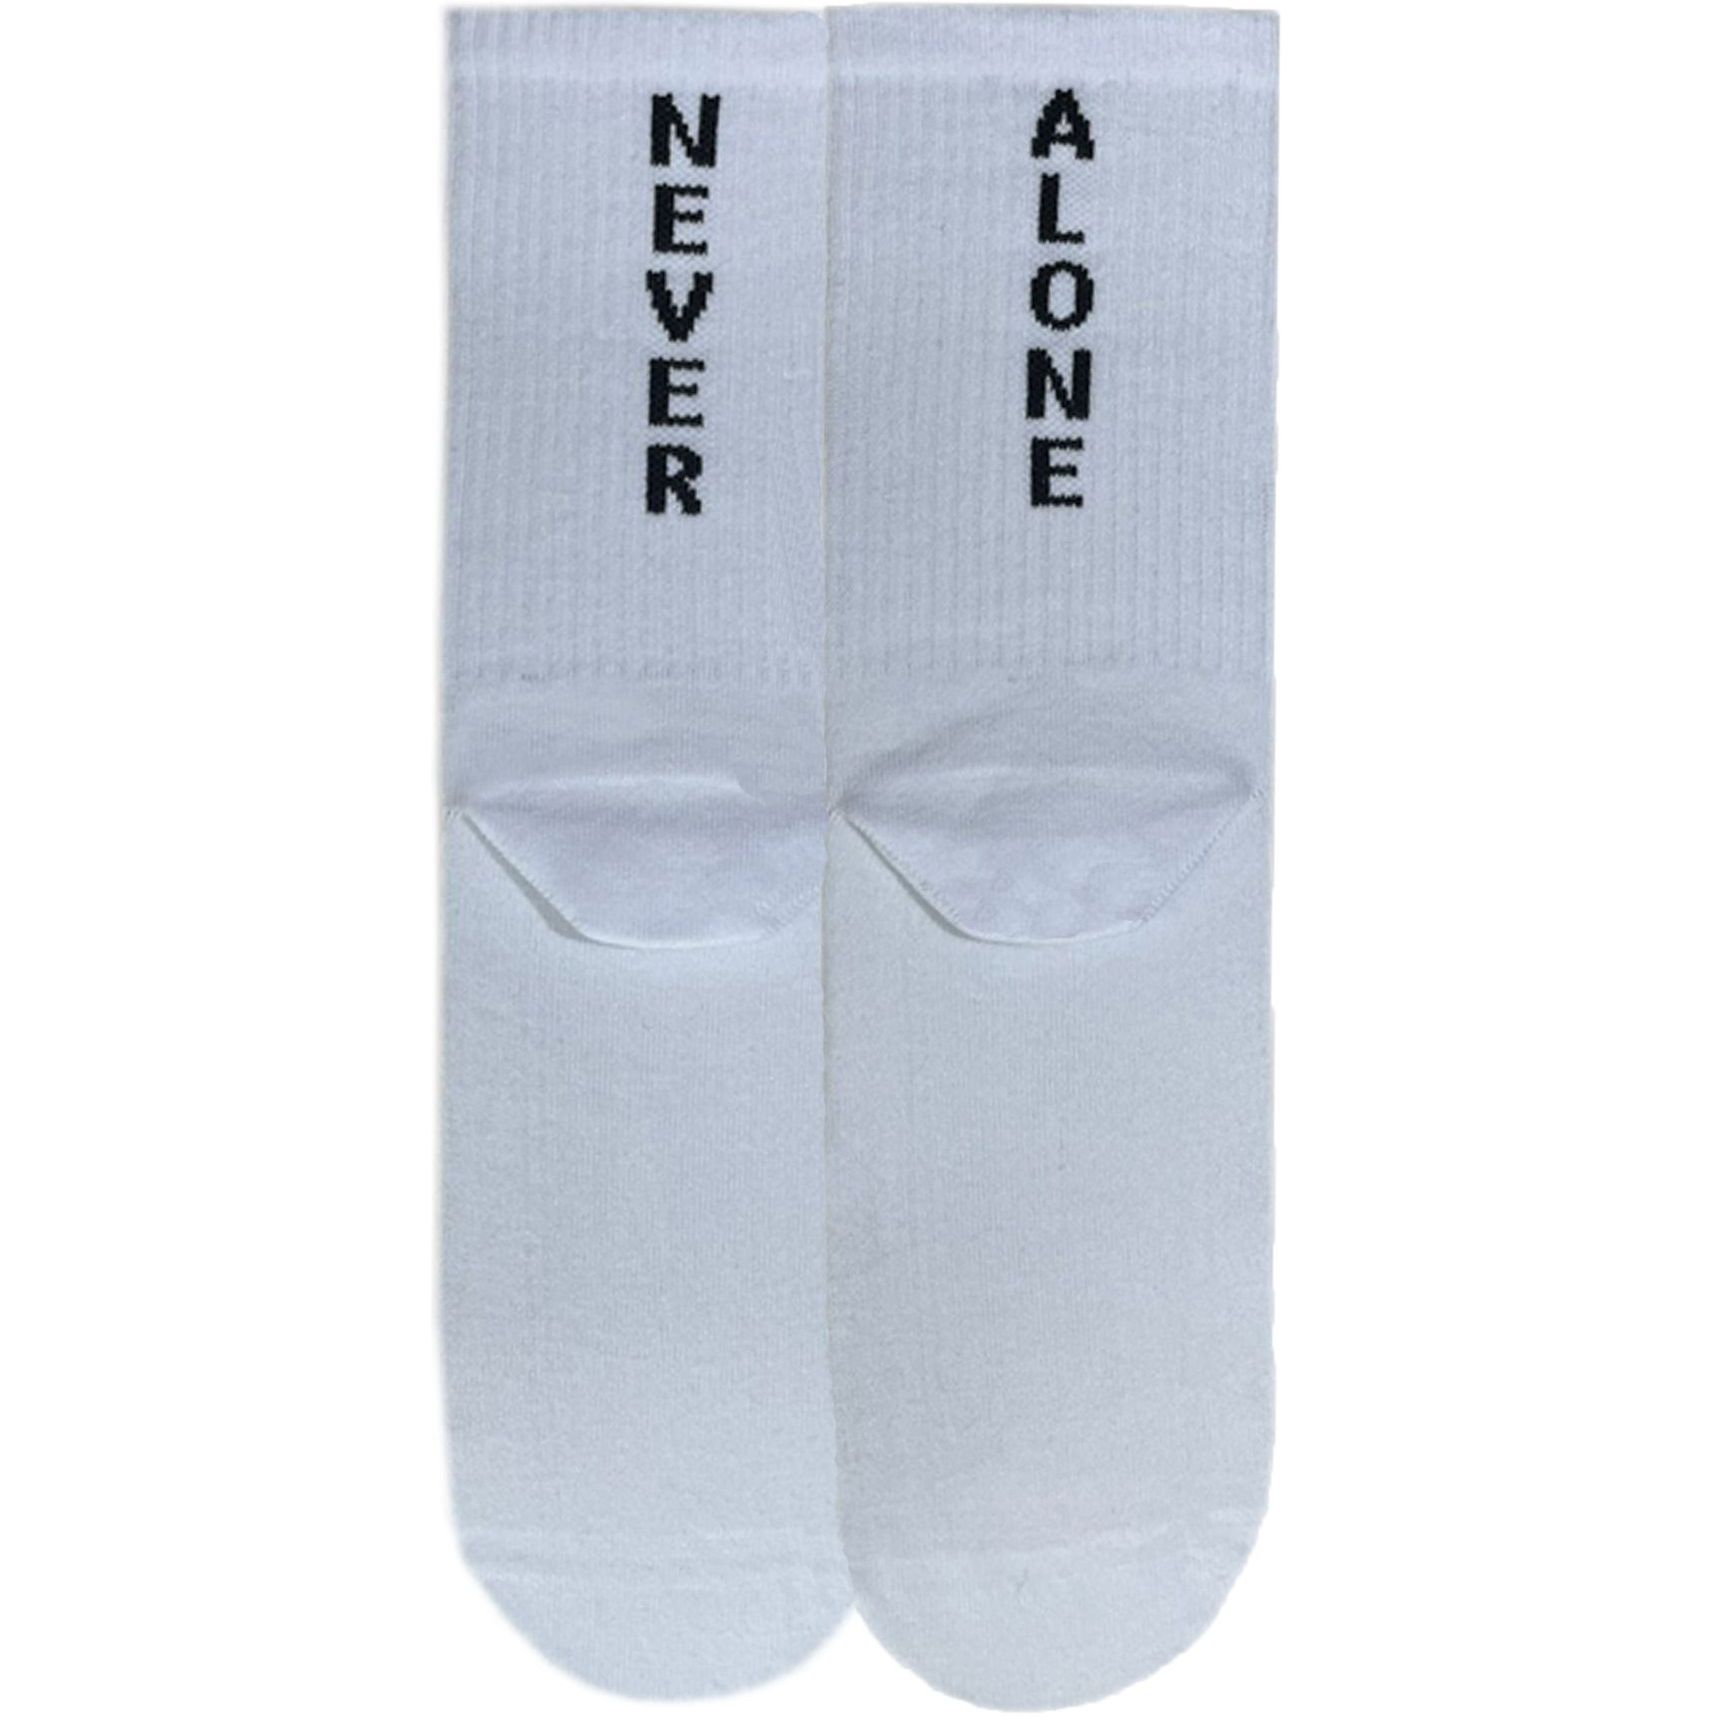 Шкарпетки чоловічі Premier Socks 44-45 1 пара білі з принтом (4820163317939)фото1